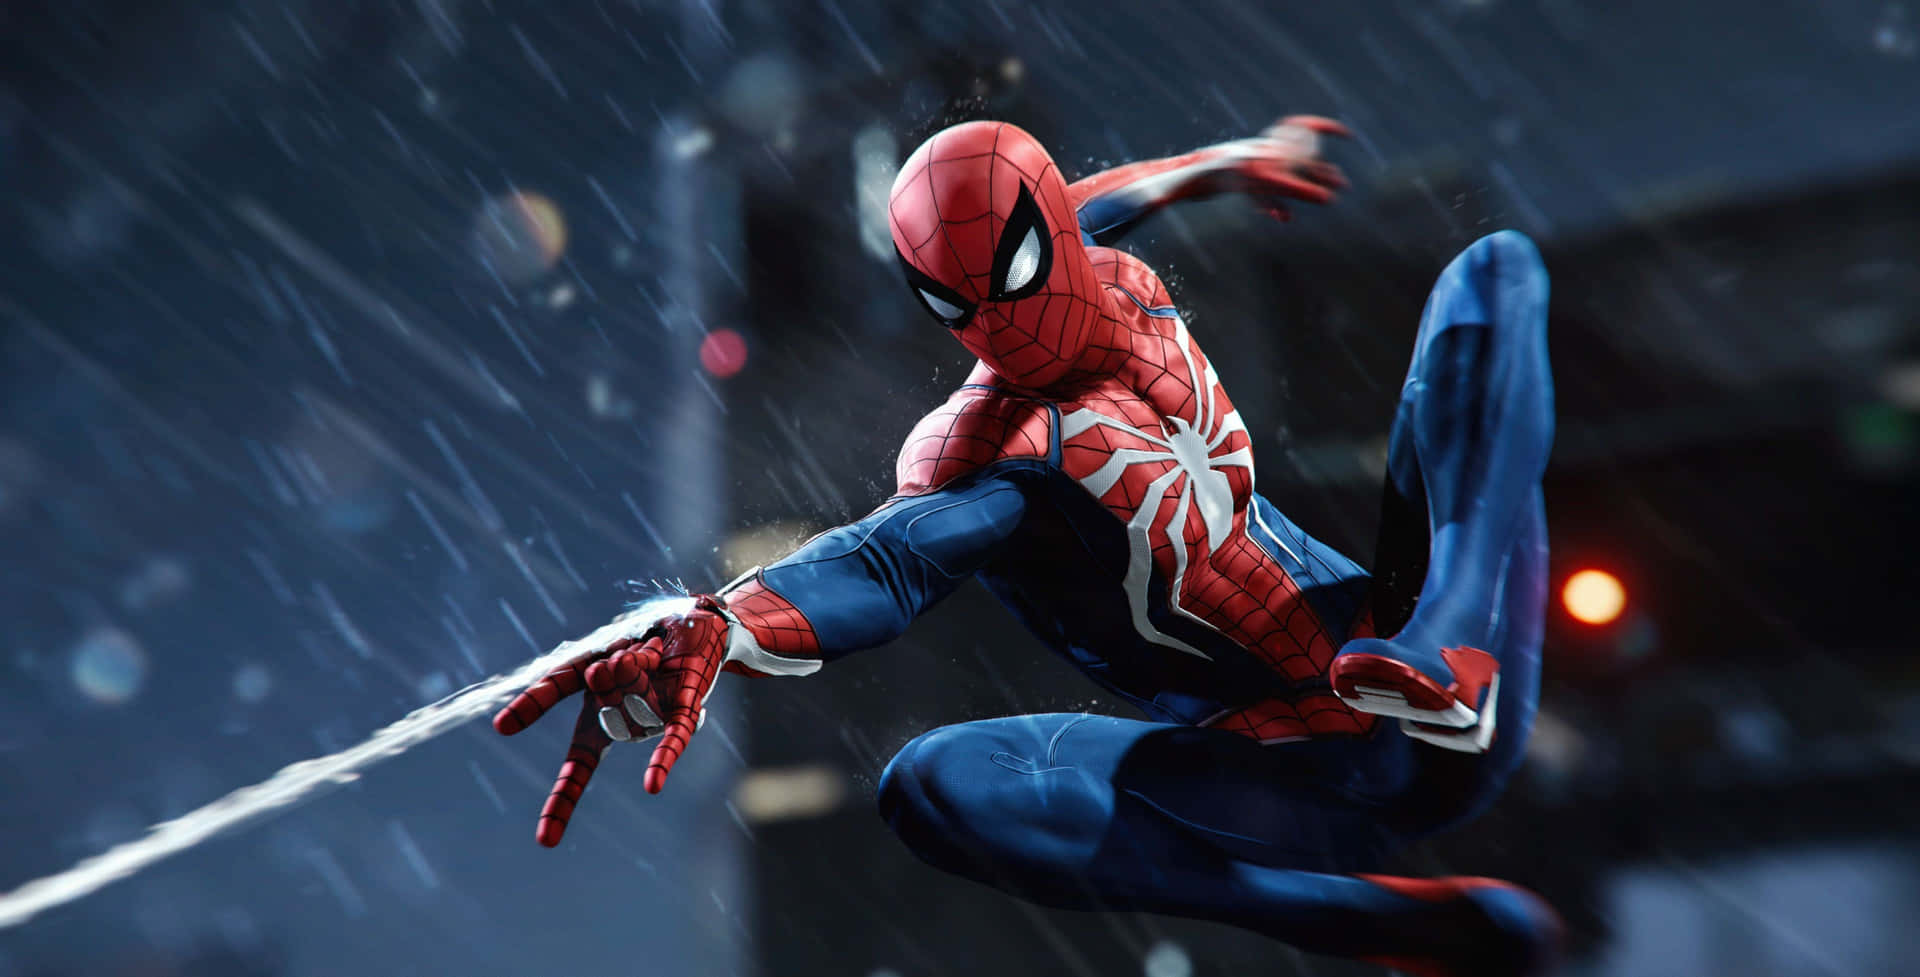 Action Marvel Spider-man